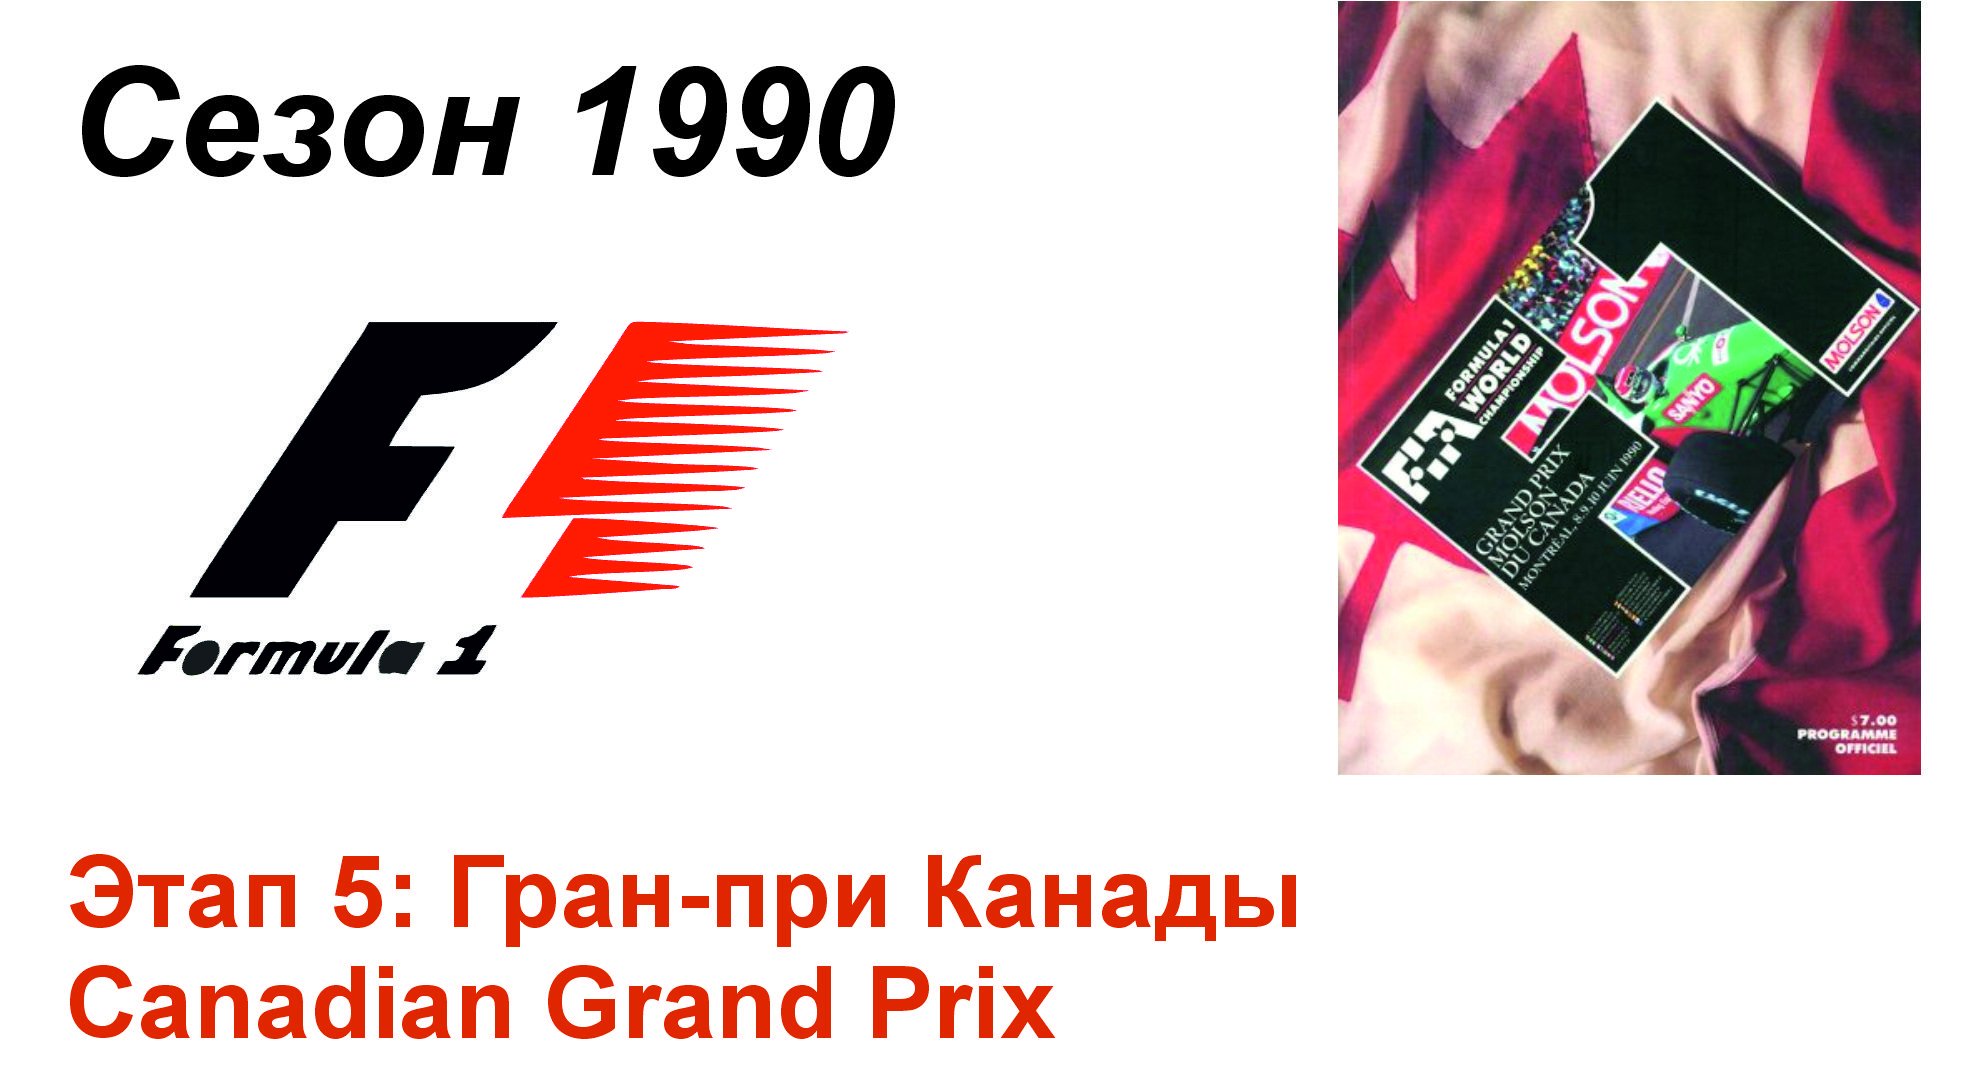 Формула-1 / Formula-1 (1990). Этап 5: Гран-при Канады (Порт/Por)